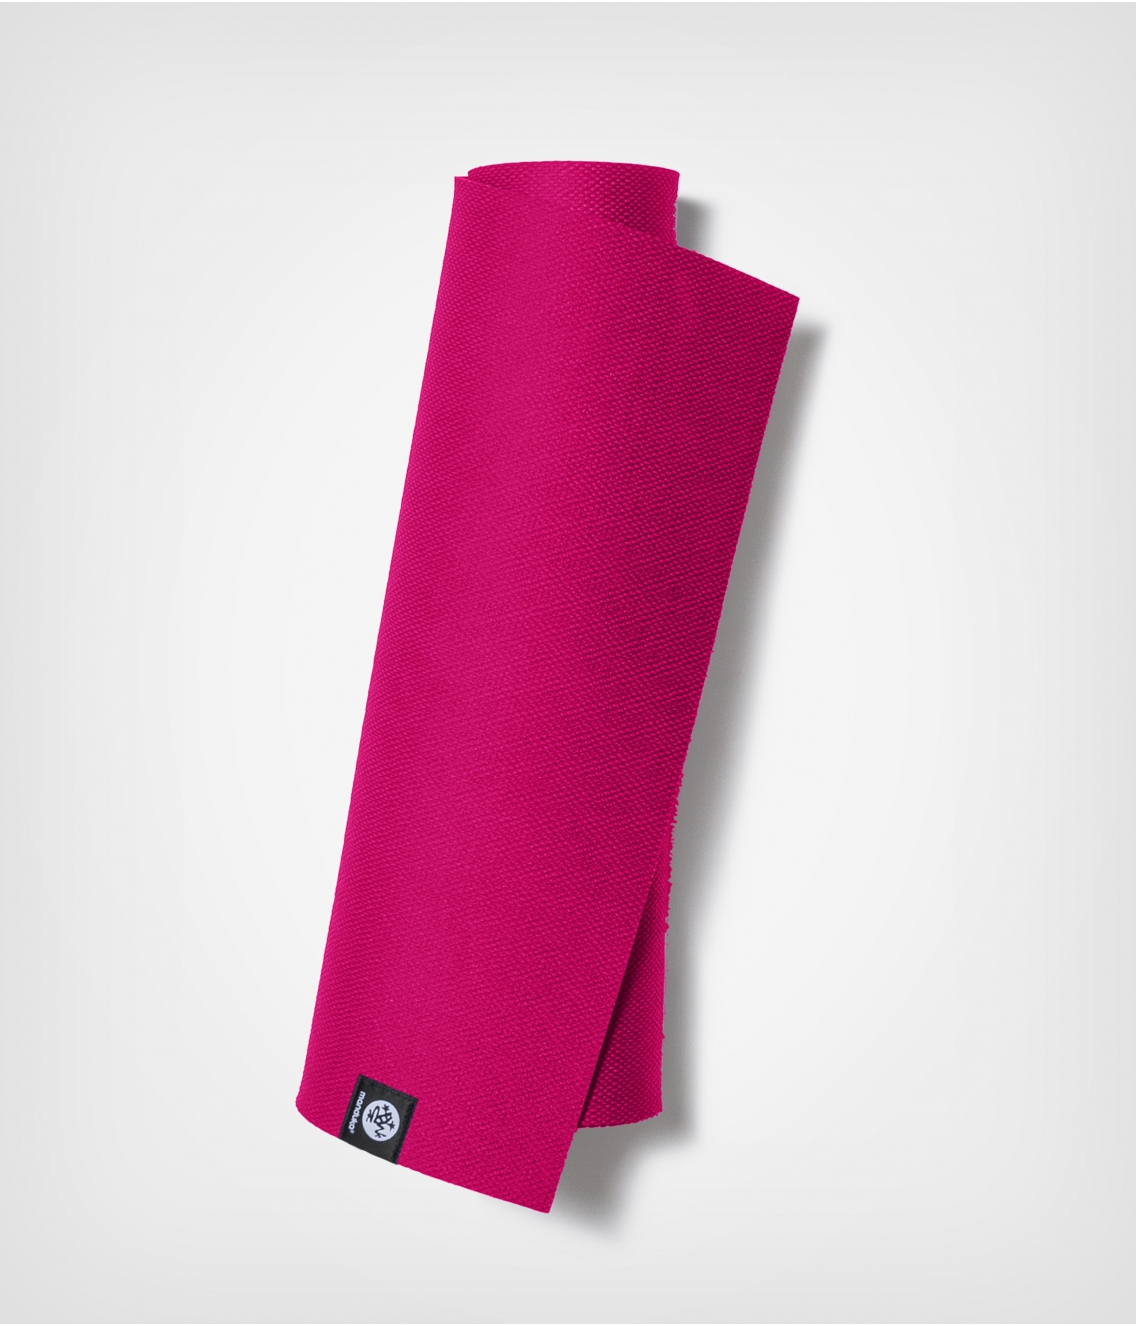 Коврик для йоги из ТПЕ Manduka X Mat 180*61*0,5 см - Dark Pink